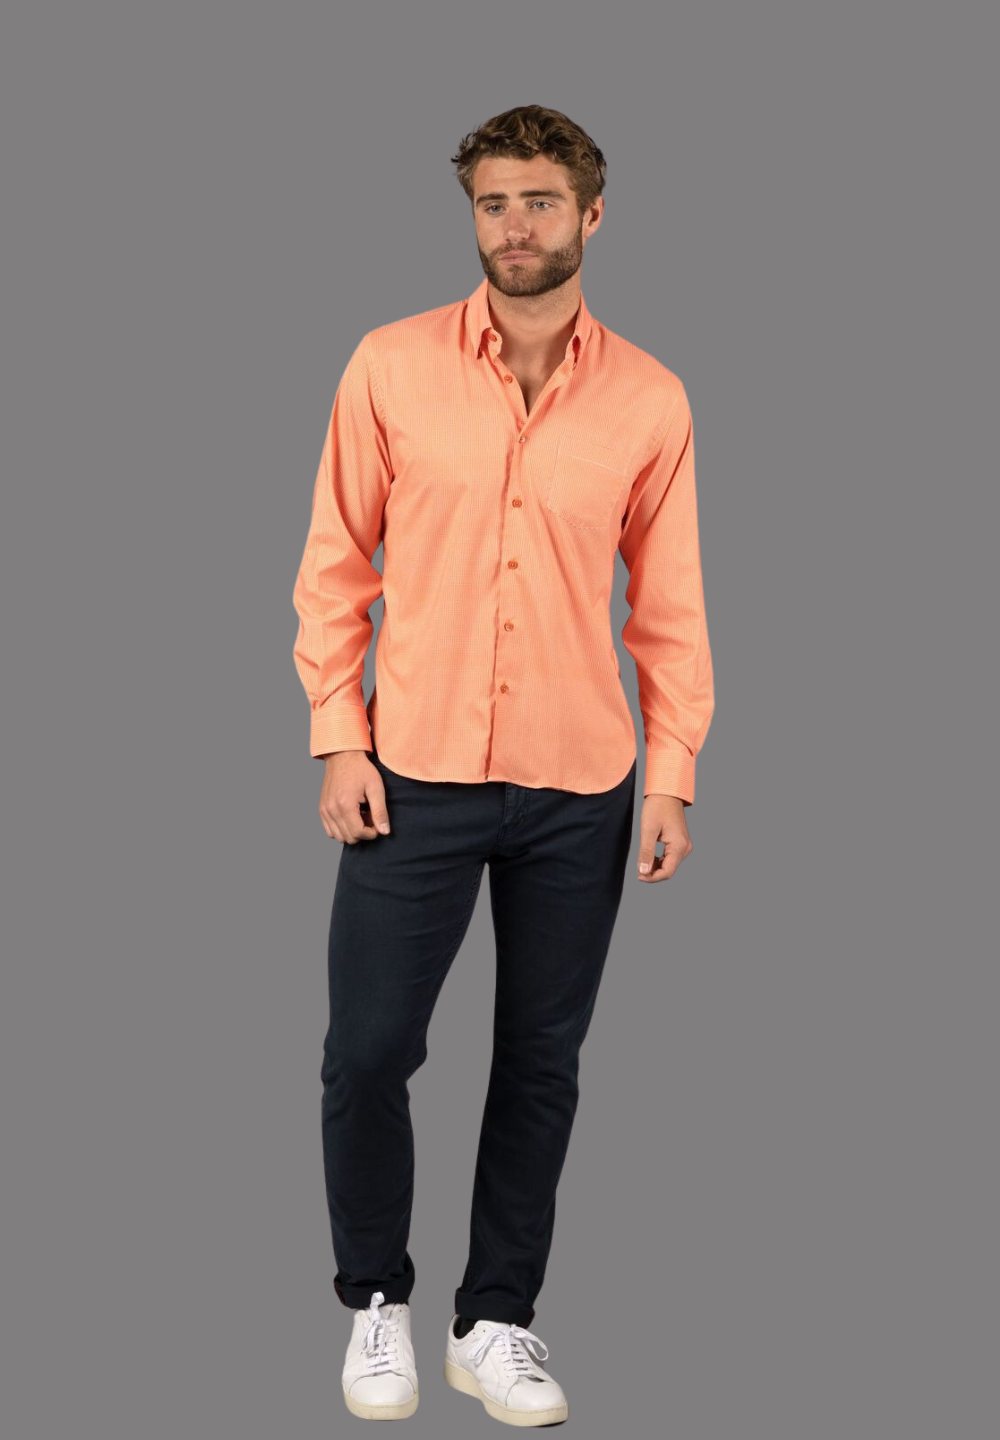 Orange and White Check Shirt